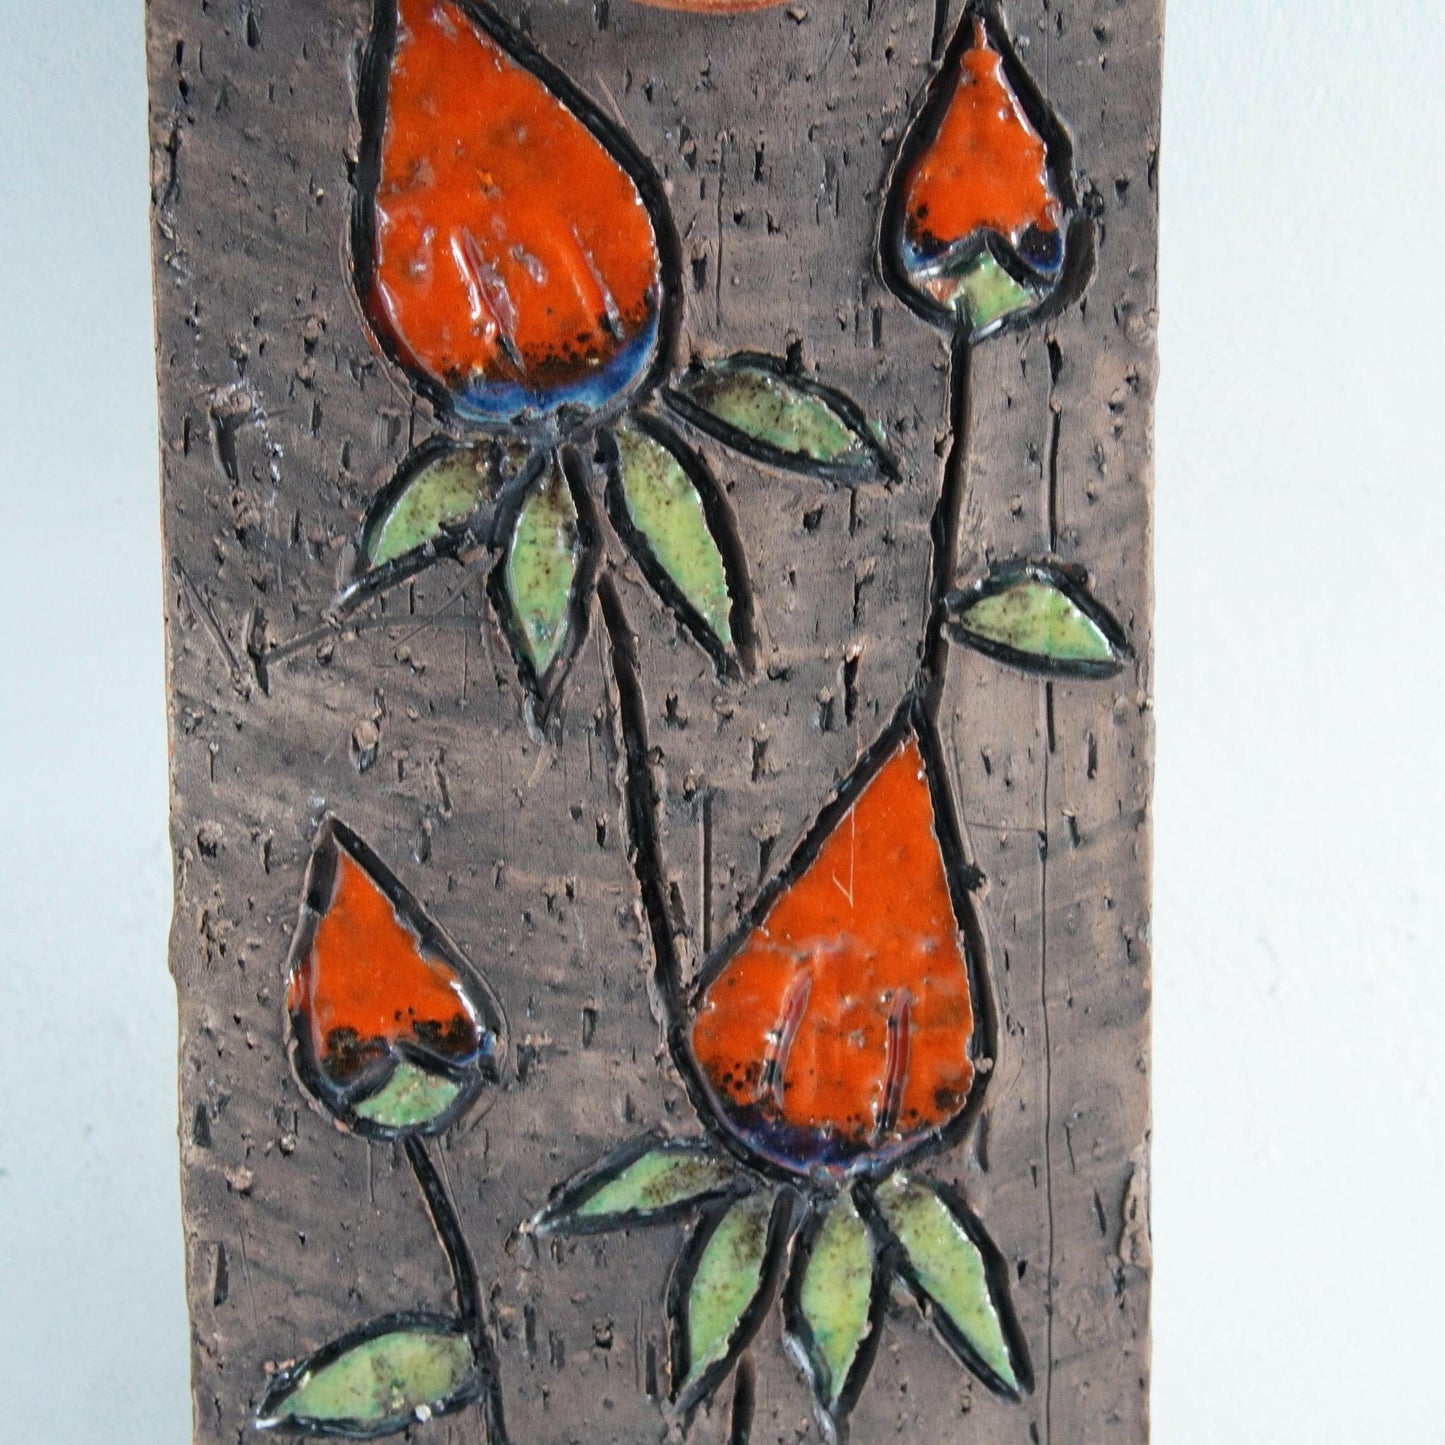 ティルグマン窯「オレンジ色の果実」の陶板 - 北欧食器Tacksamycket